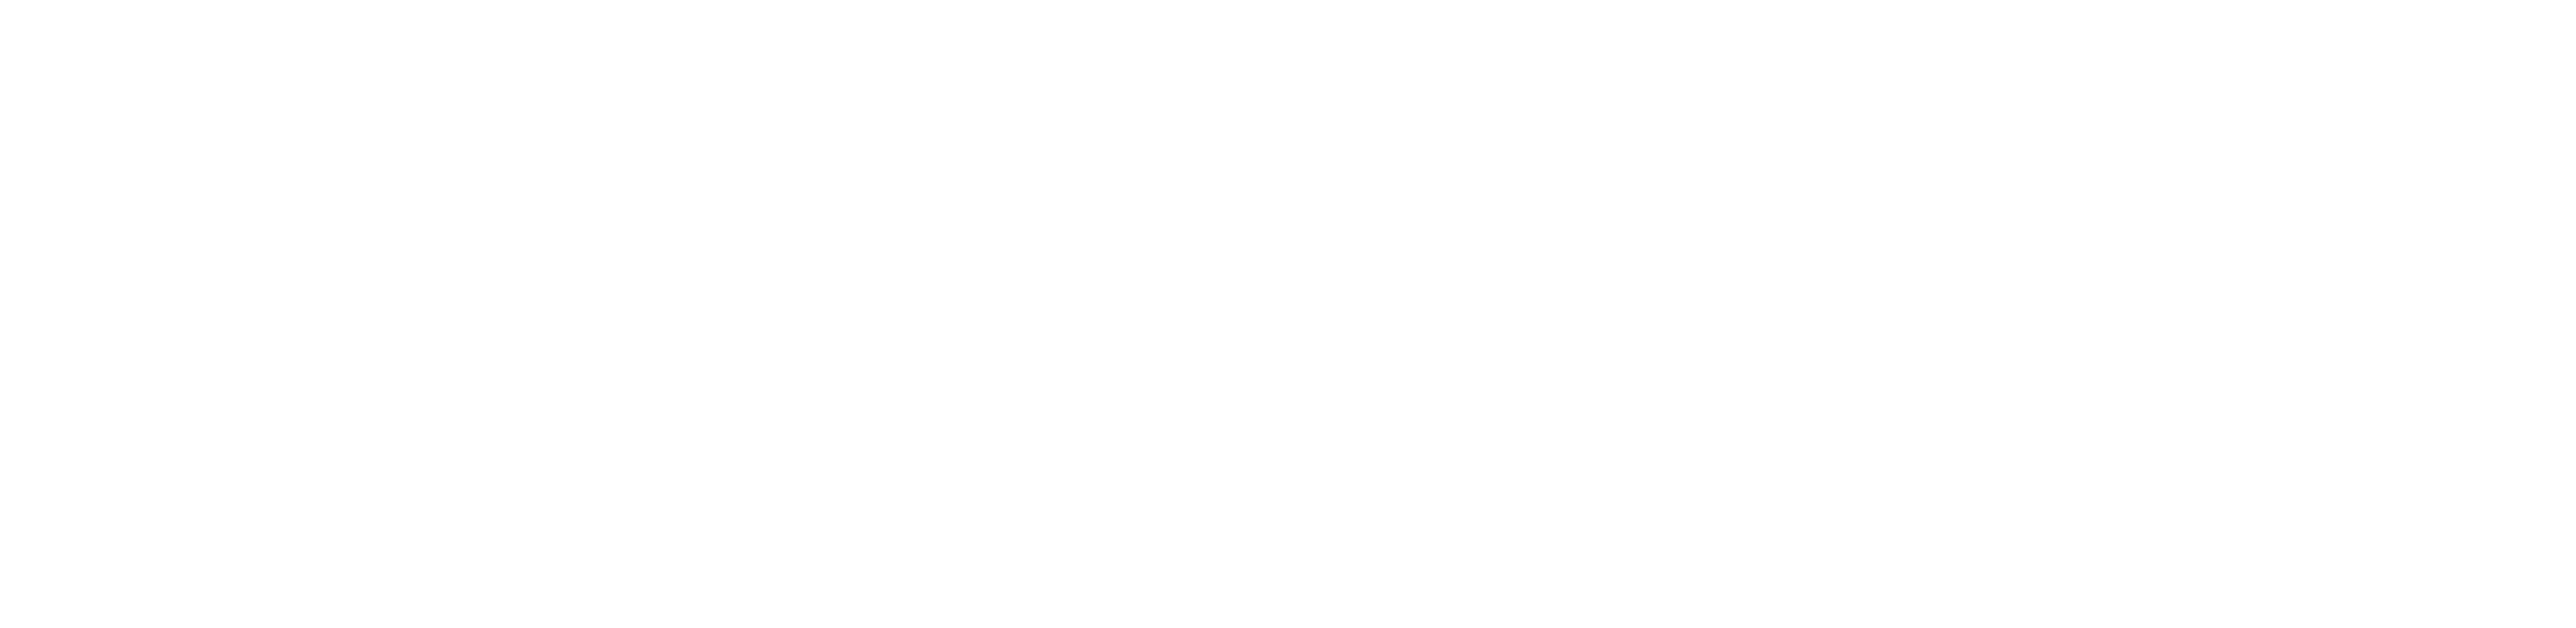 TrueOcean logo